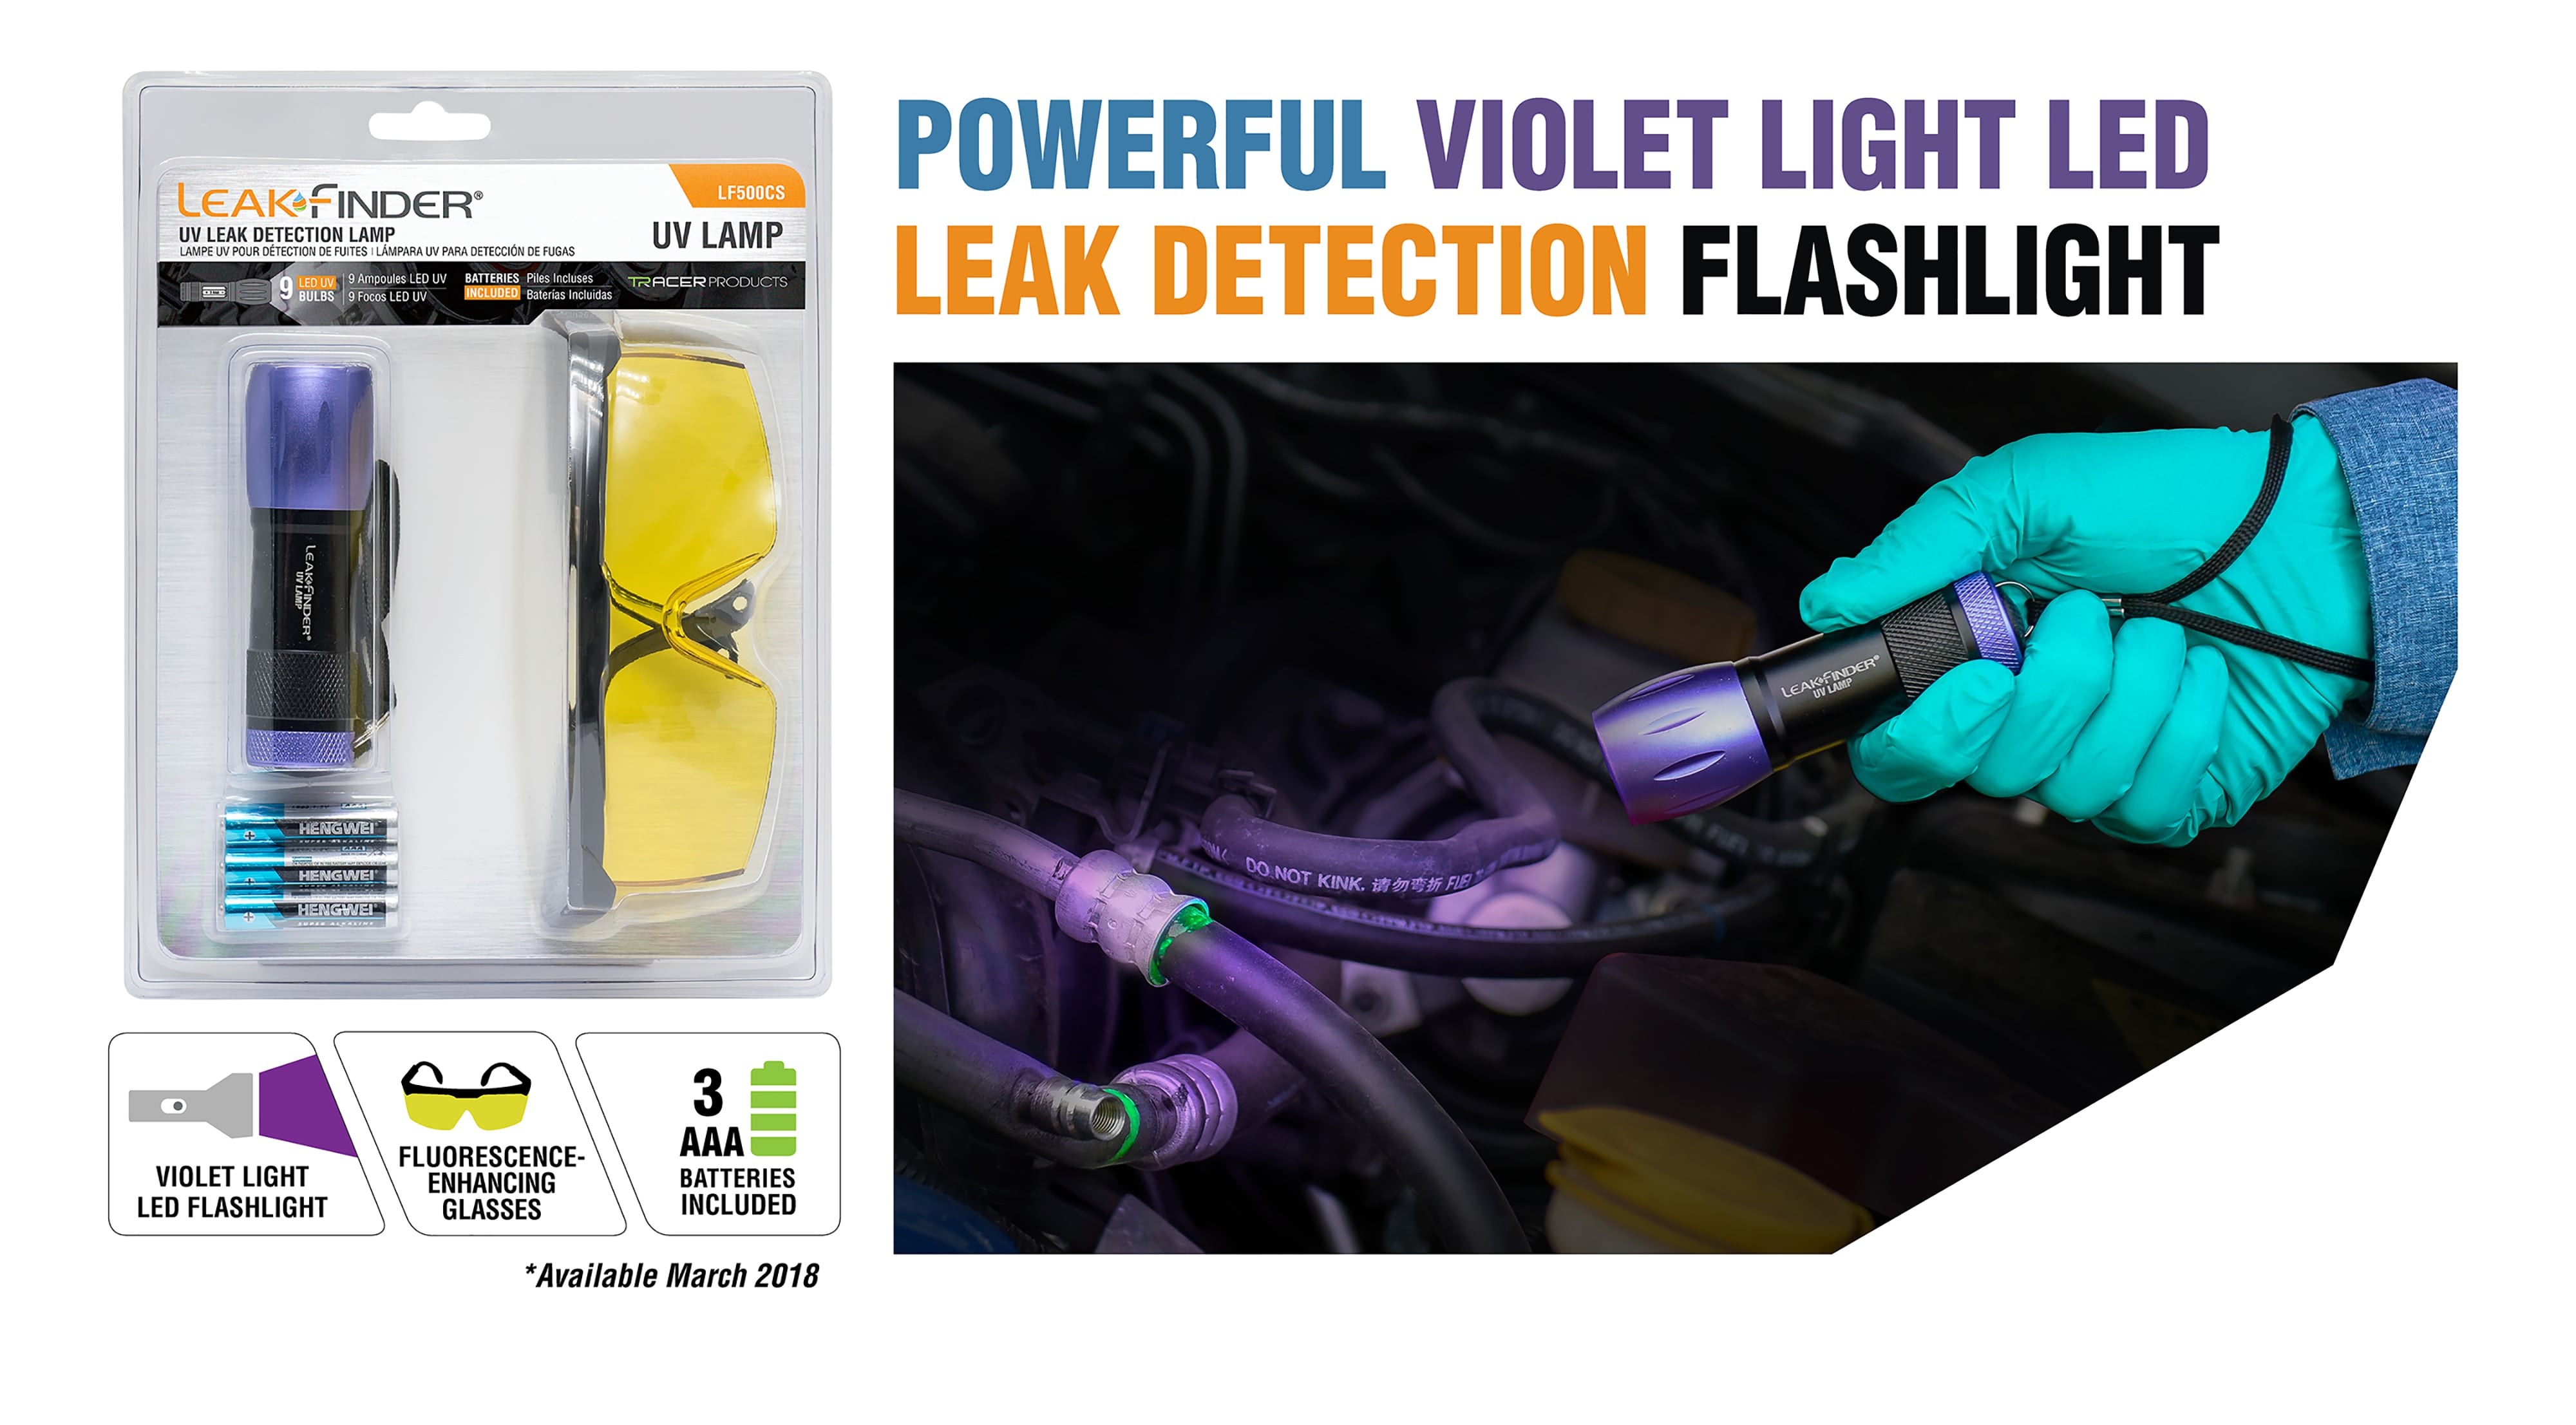 Lampe torche 9 LED de Détection Ultra Violet UV pour traceur fluoresc